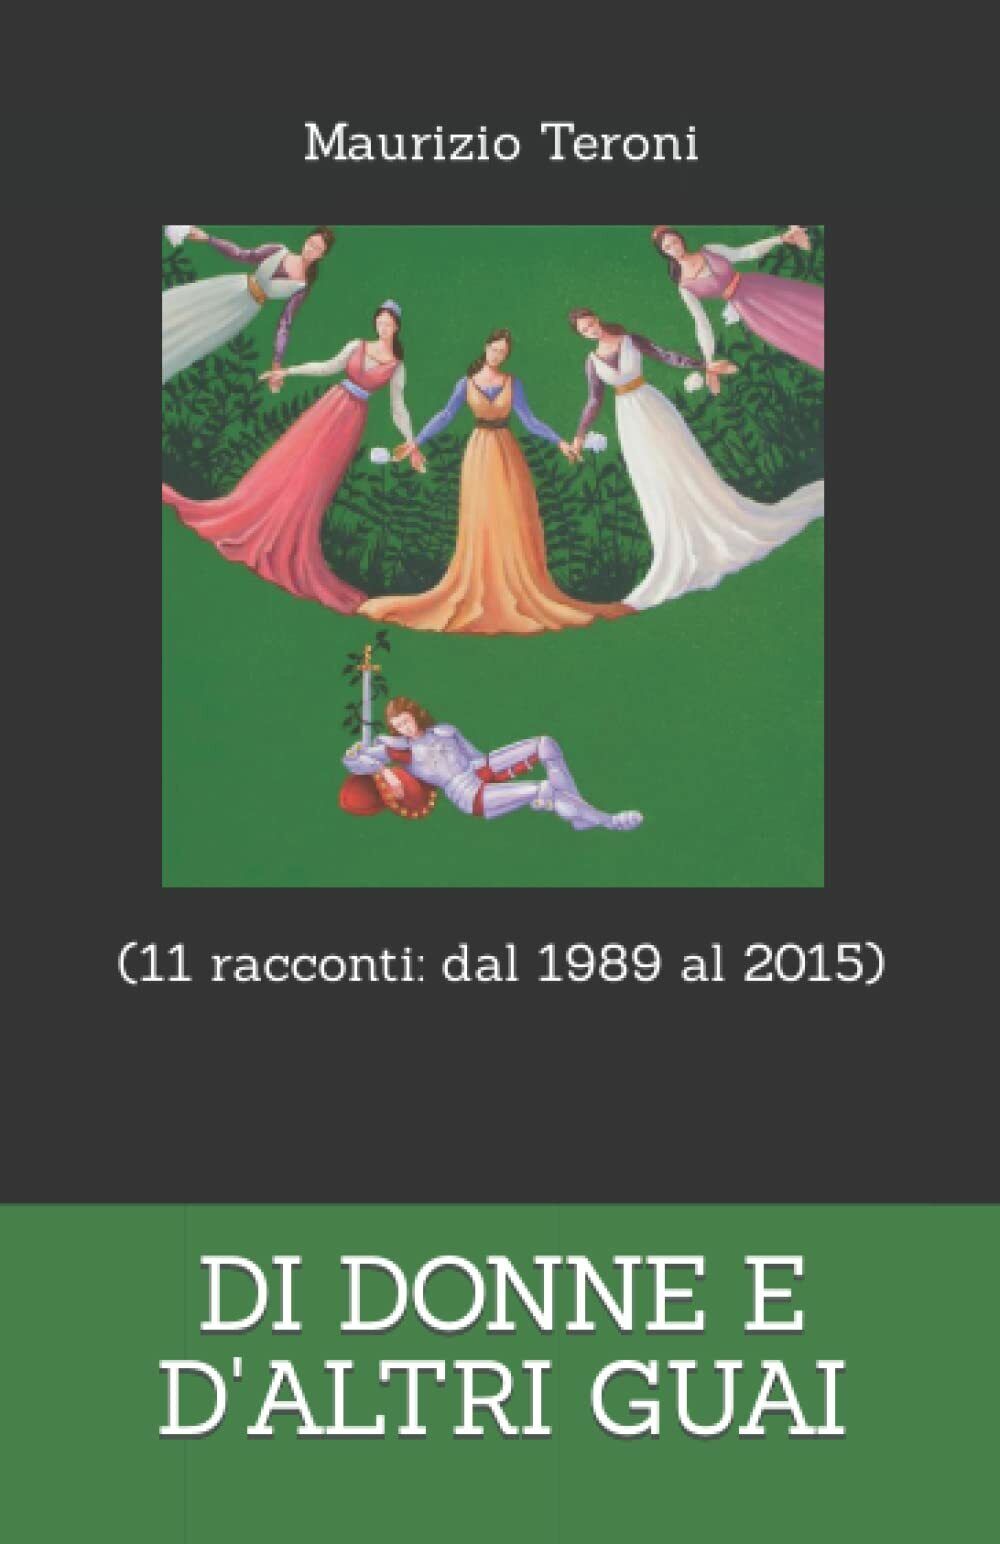 DI DONNE E d'ALTRI GUAI (11 racconti: dal 1998 al 2015) di Maurizio Teroni,  202